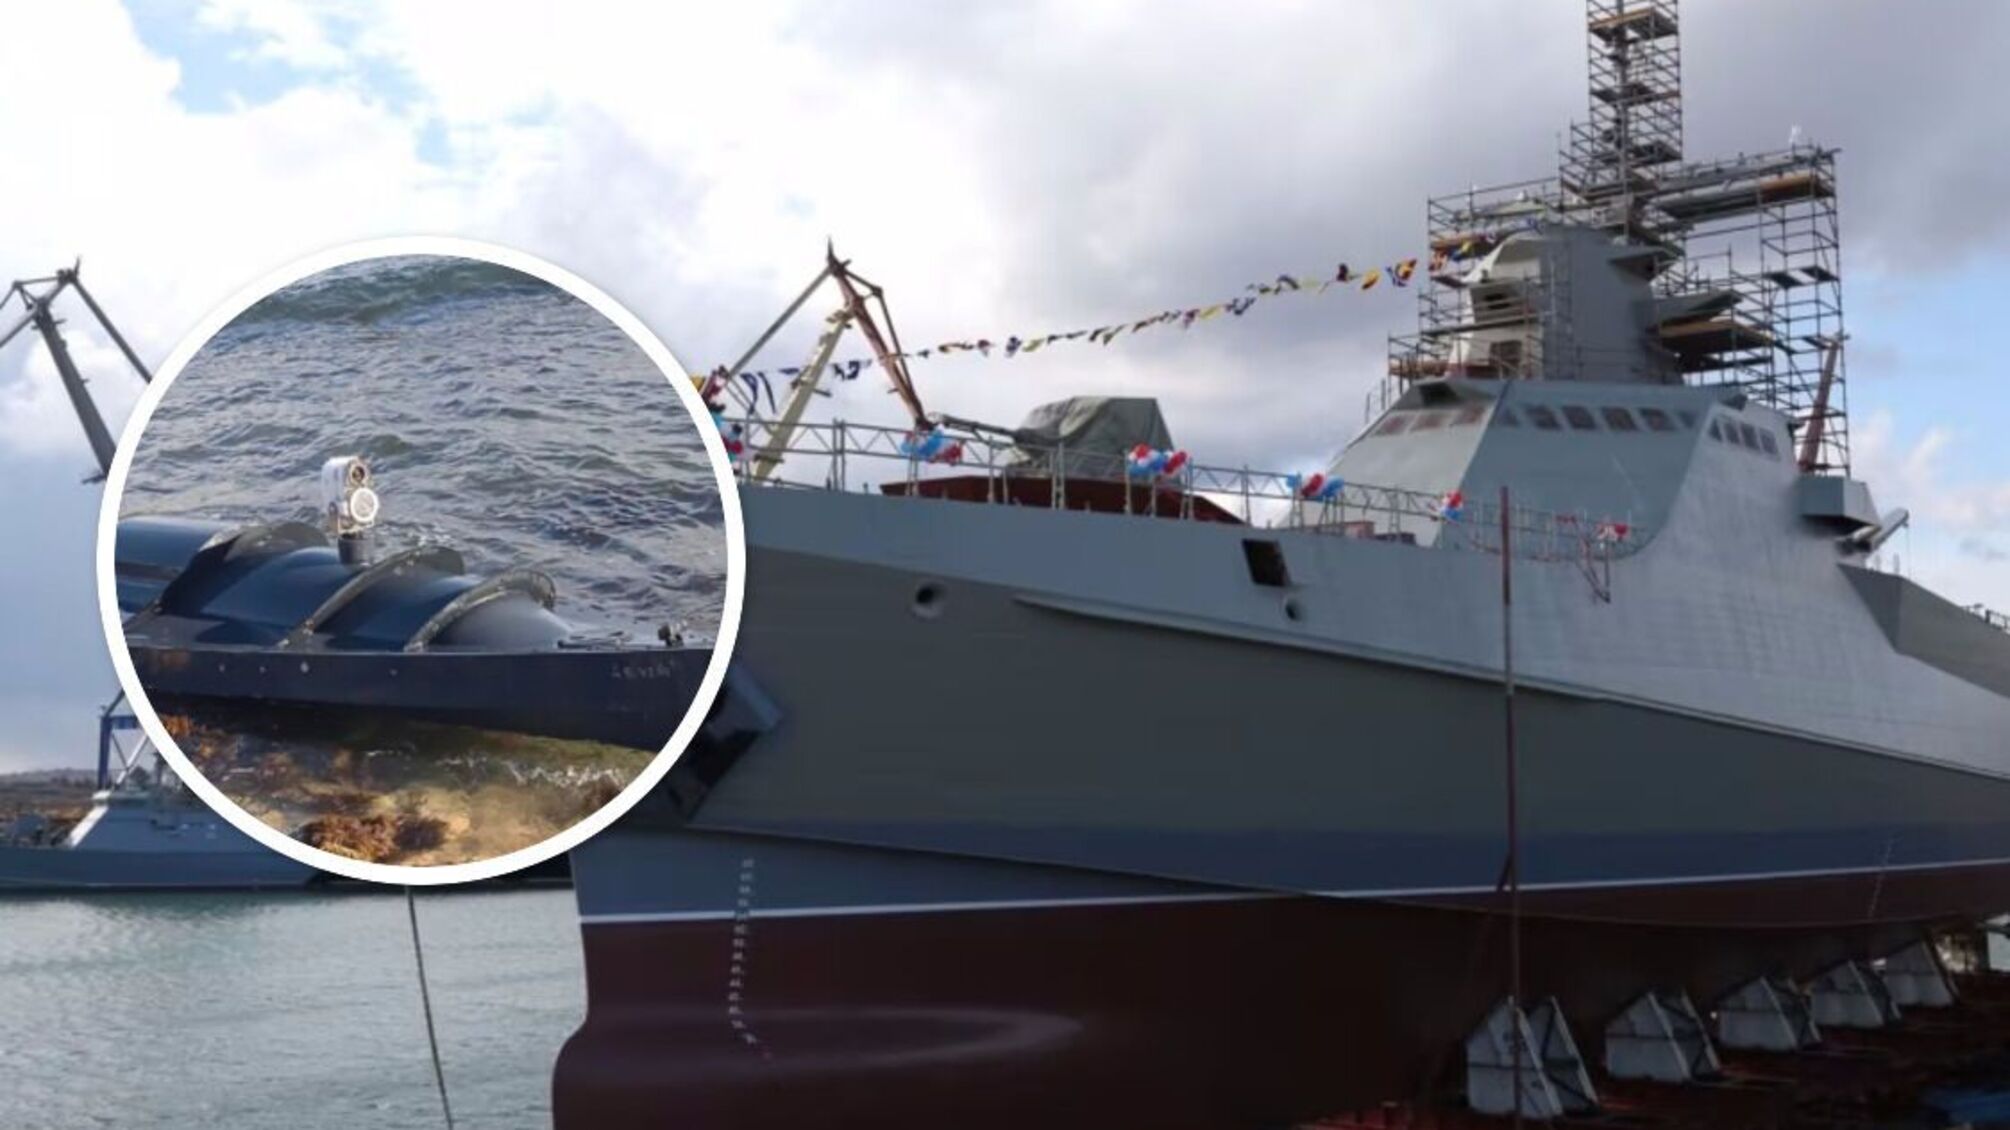 Міноборони рф заявило про 'спробу атаки' ЗСУ патрульного корабля: подробиці